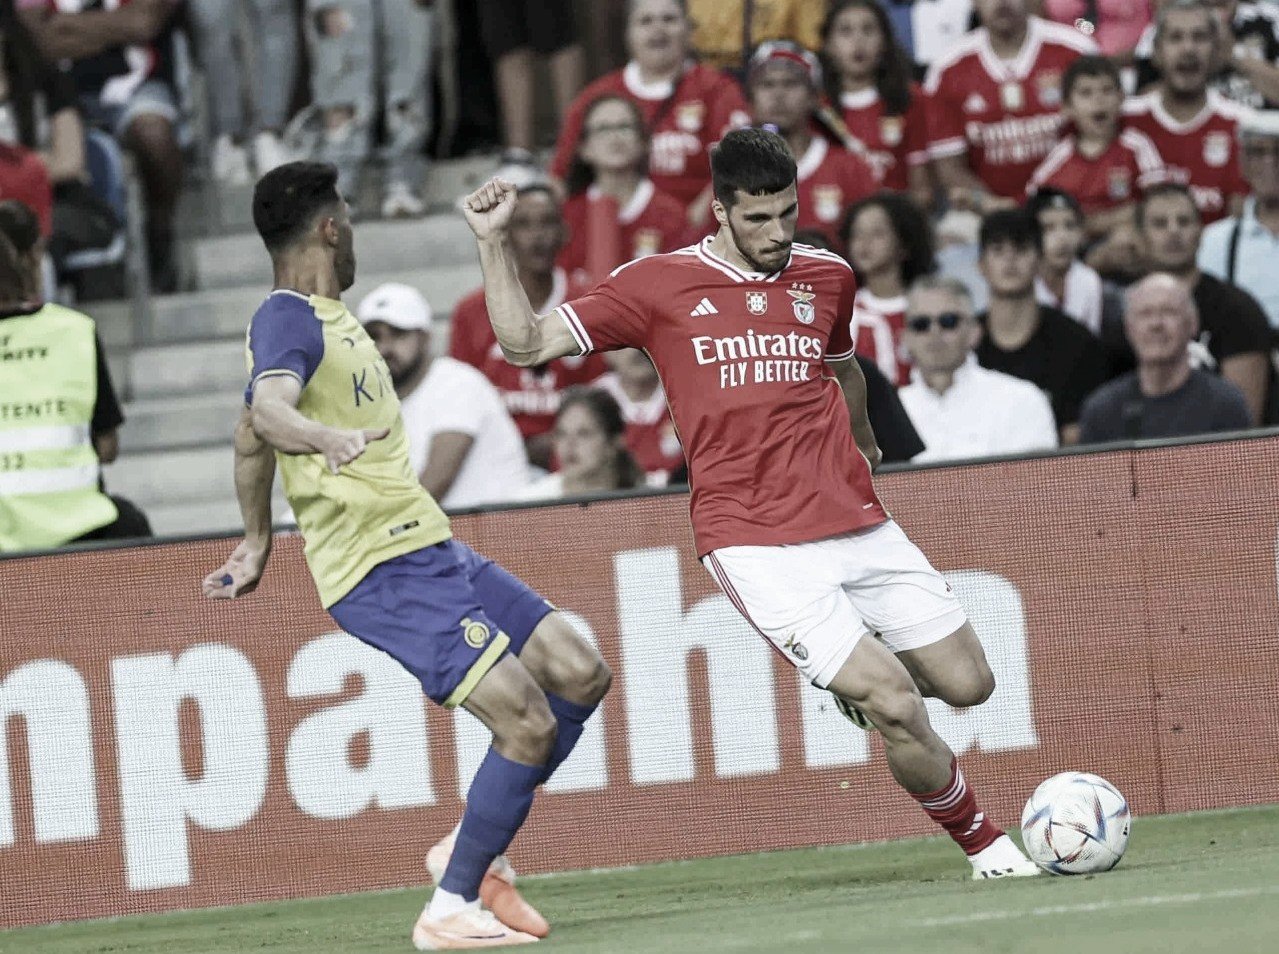 Goals and highlights Benfica 2-0 Celta de Vigo in the international friendly match